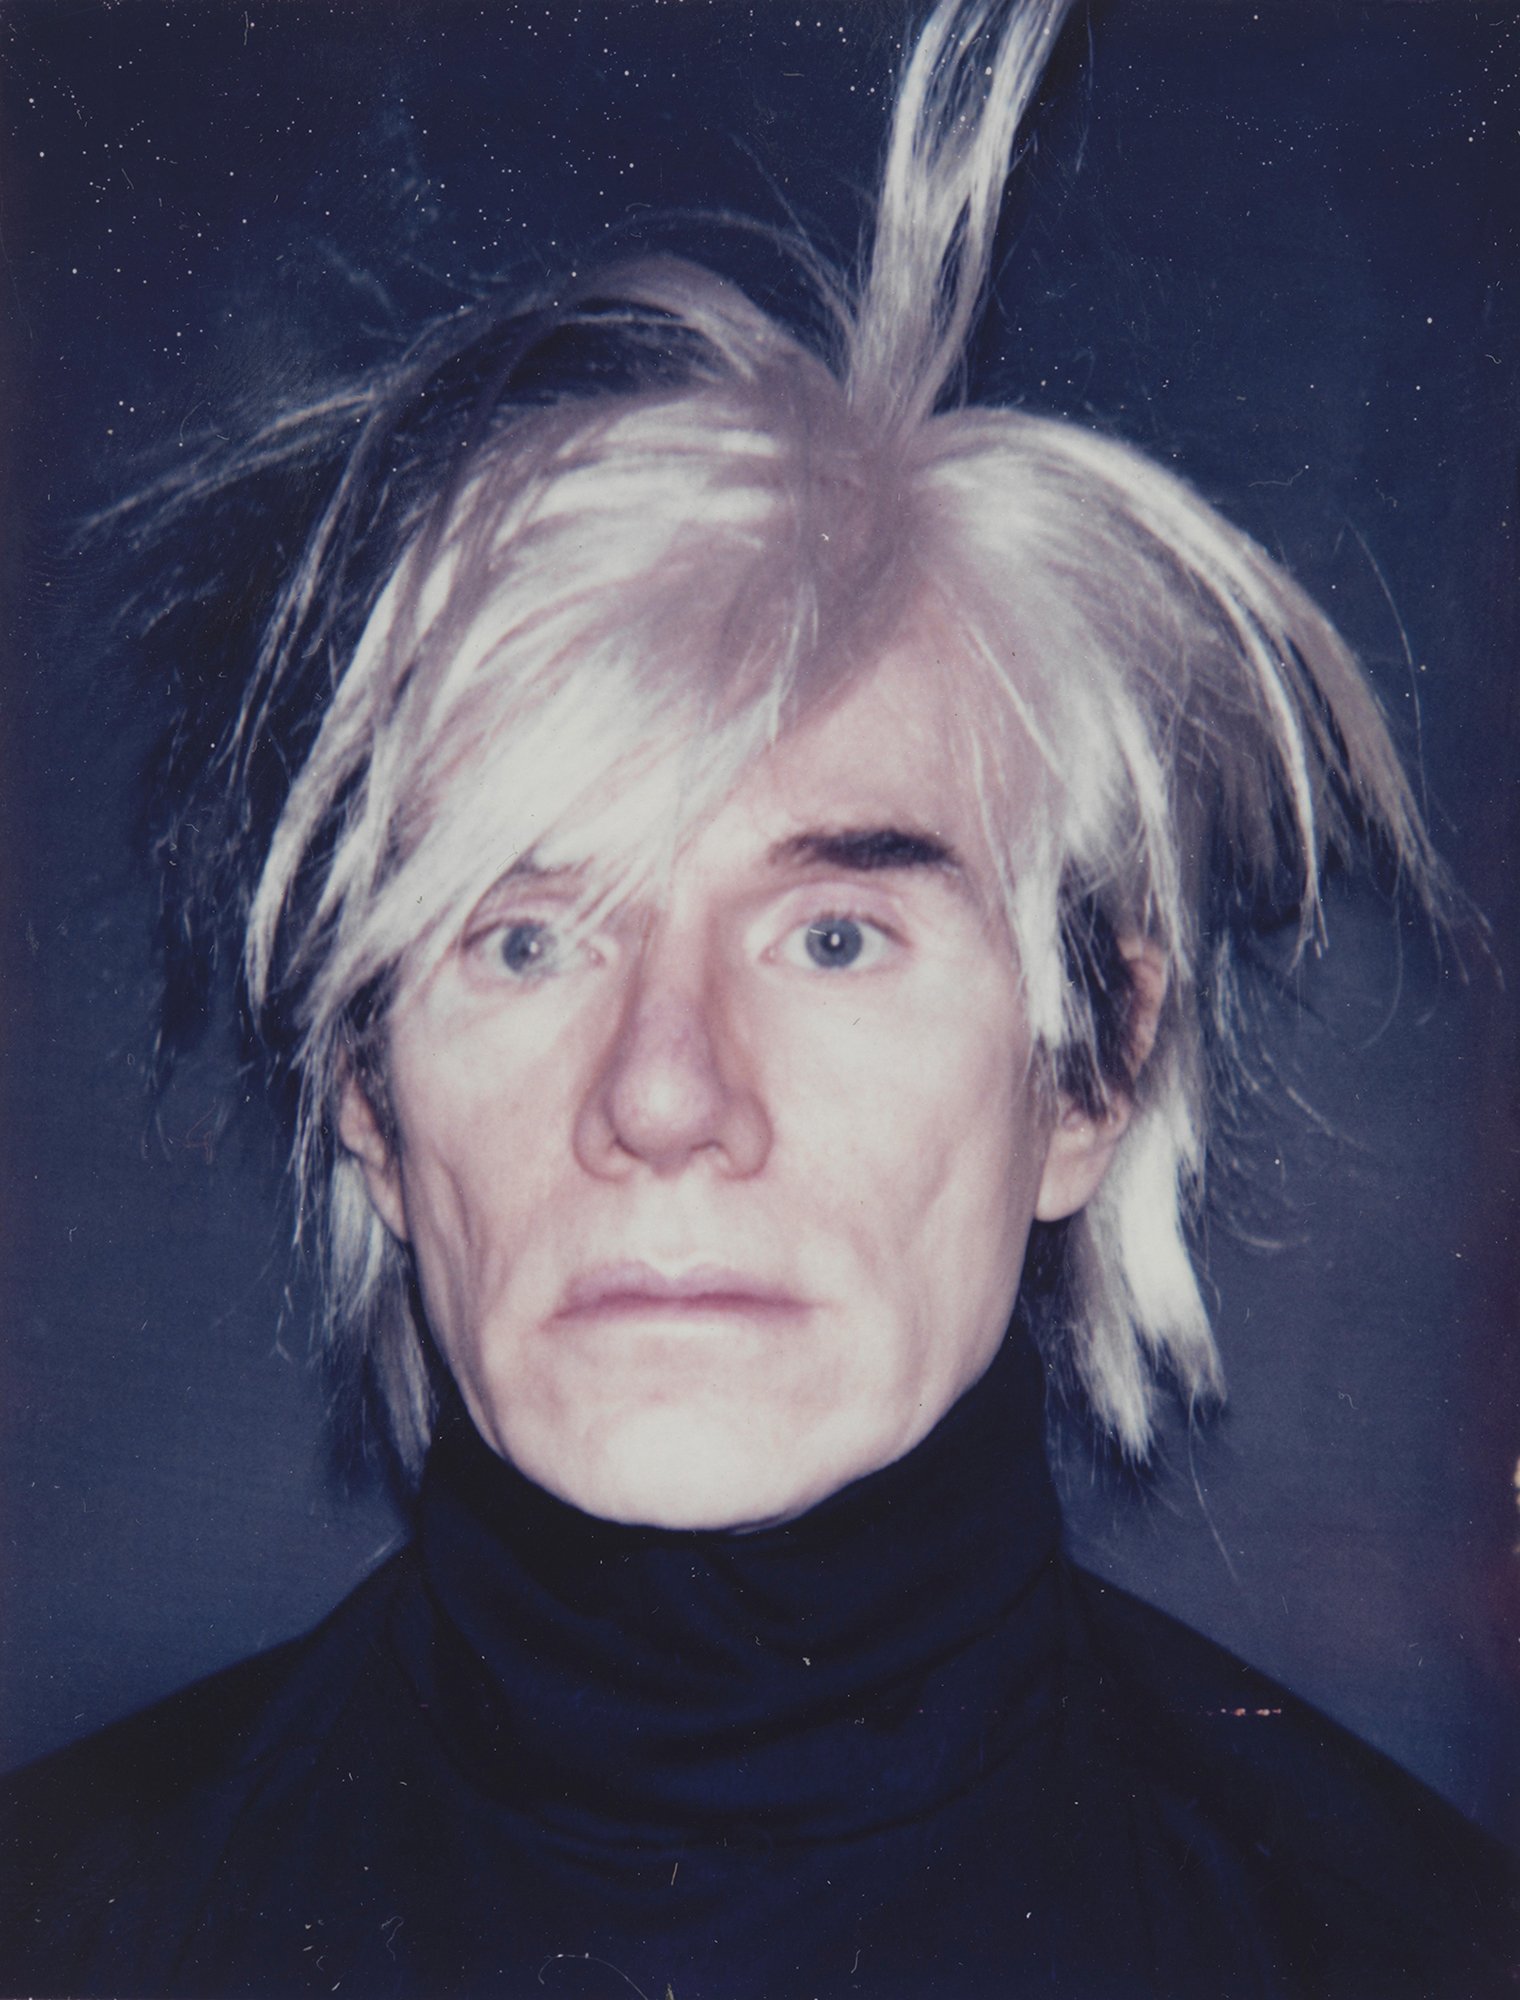 Selbstporträt von Andy Warhol aus dem Jahr 1986. Der Künstler hat graue Haare und trägt einen dunklen Rollkragenpullover.